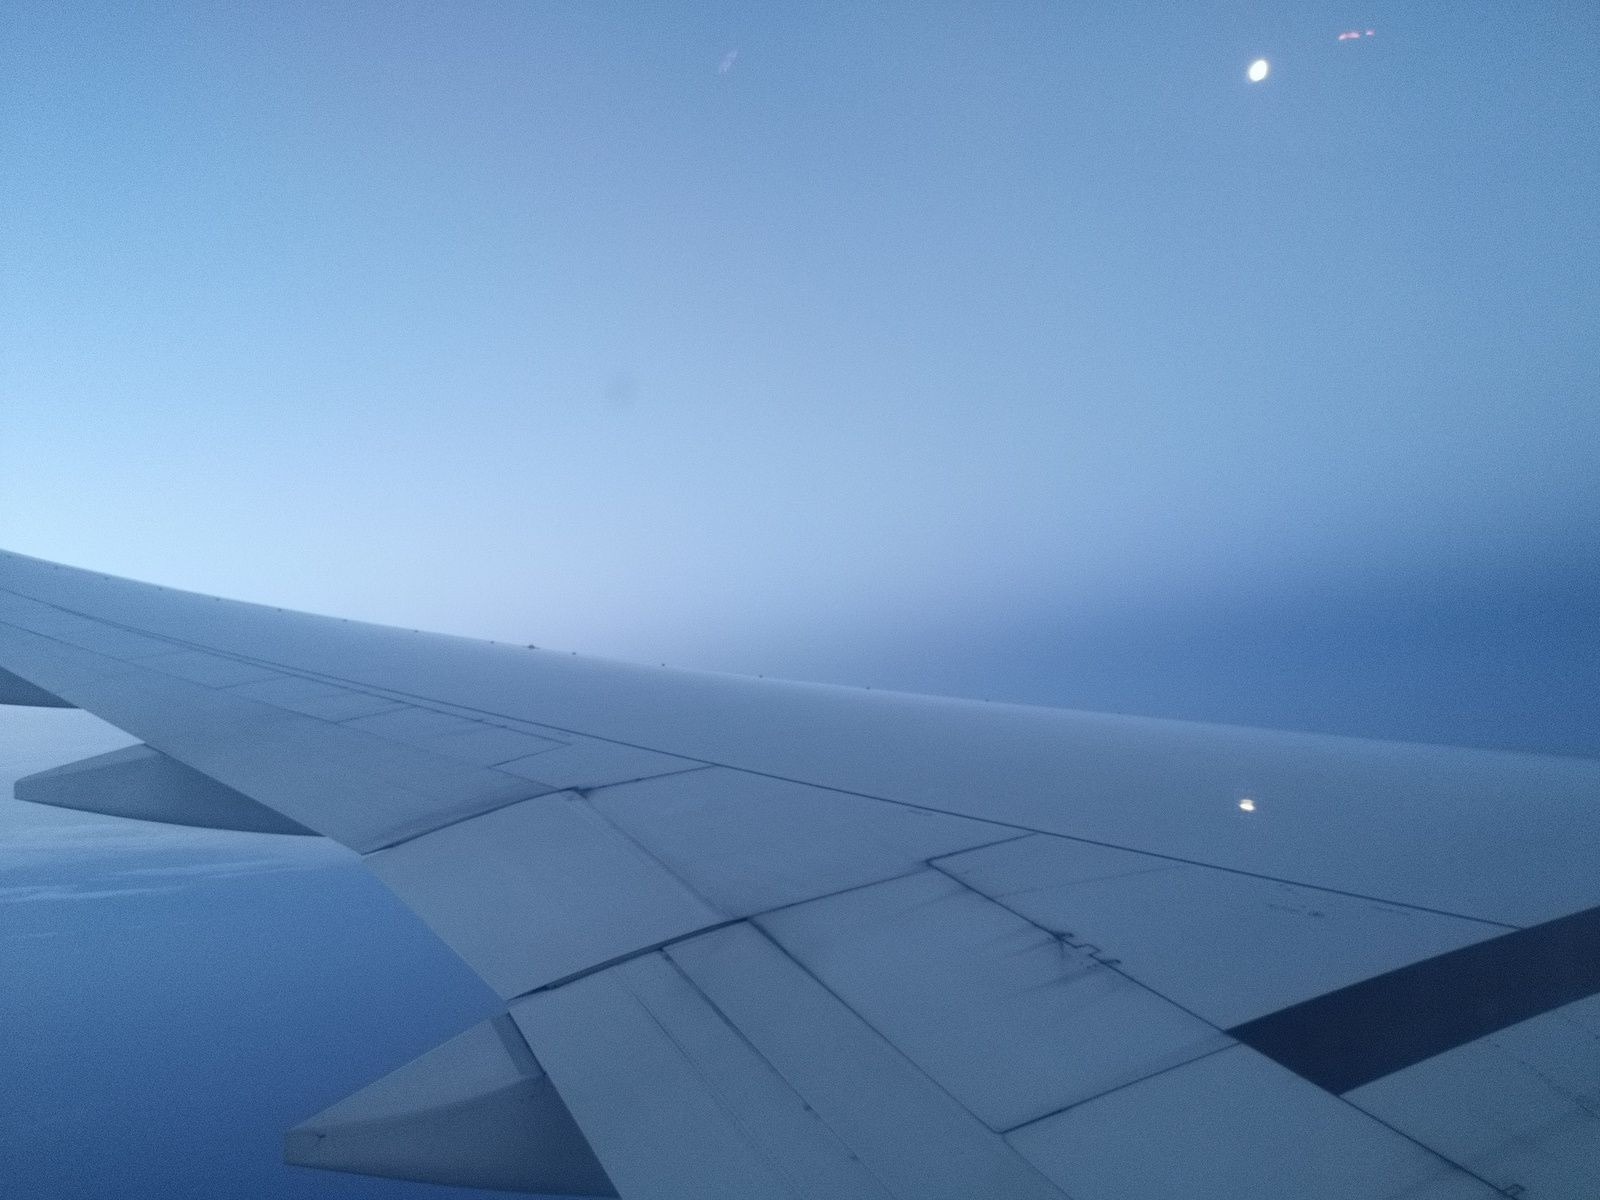 petit instant à saisir : le reflet de la lune sur l'aile de l'avion !